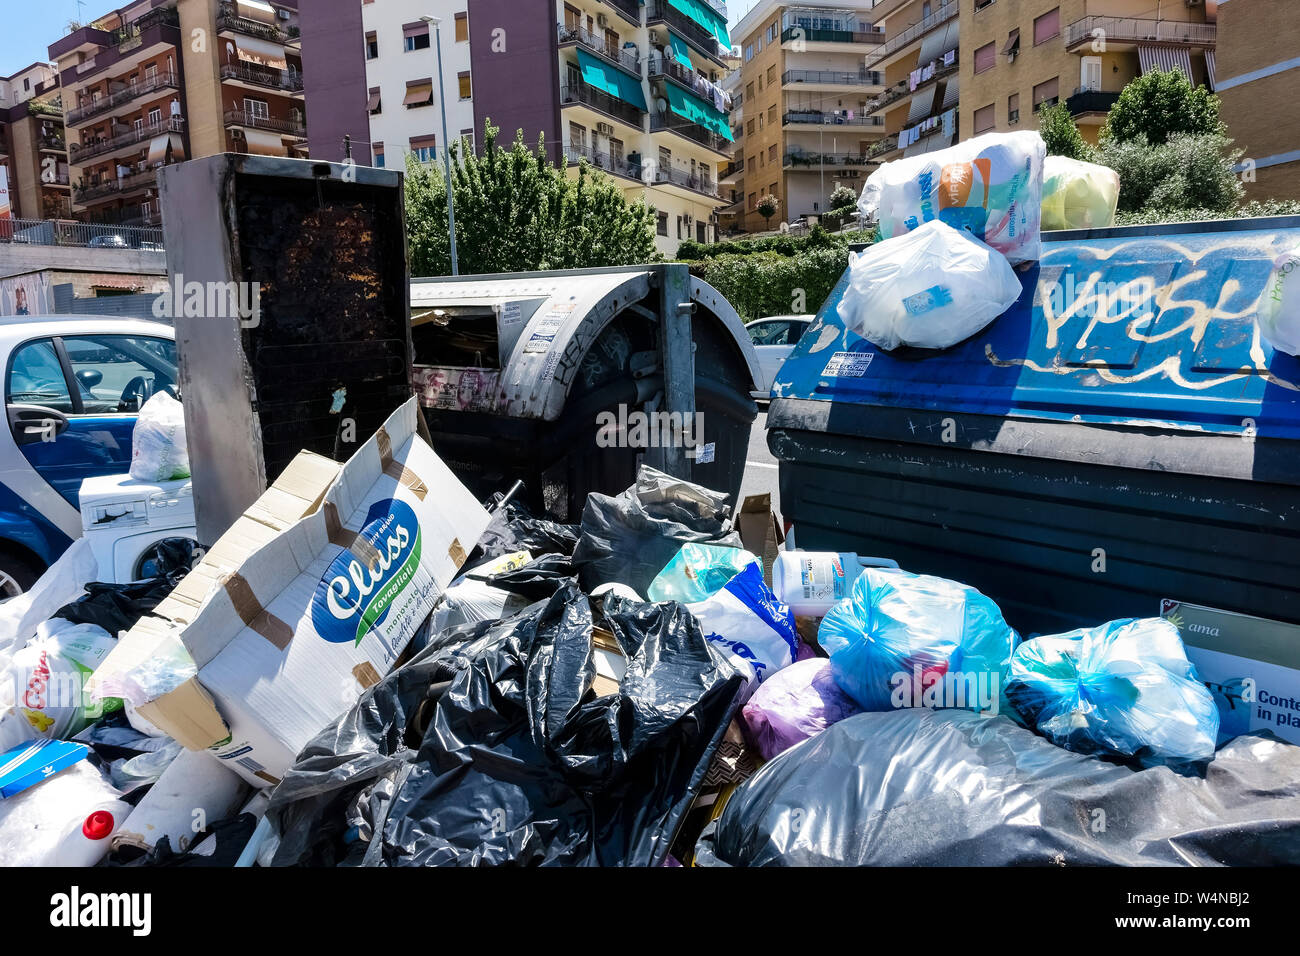 Des piles de déchets dans les rues en raison des poubelles de fullers, devant les immeubles de condominiums. L'incivilité, la grossièreté et la saleté. Rome, Italie, Europe, UE. Banque D'Images